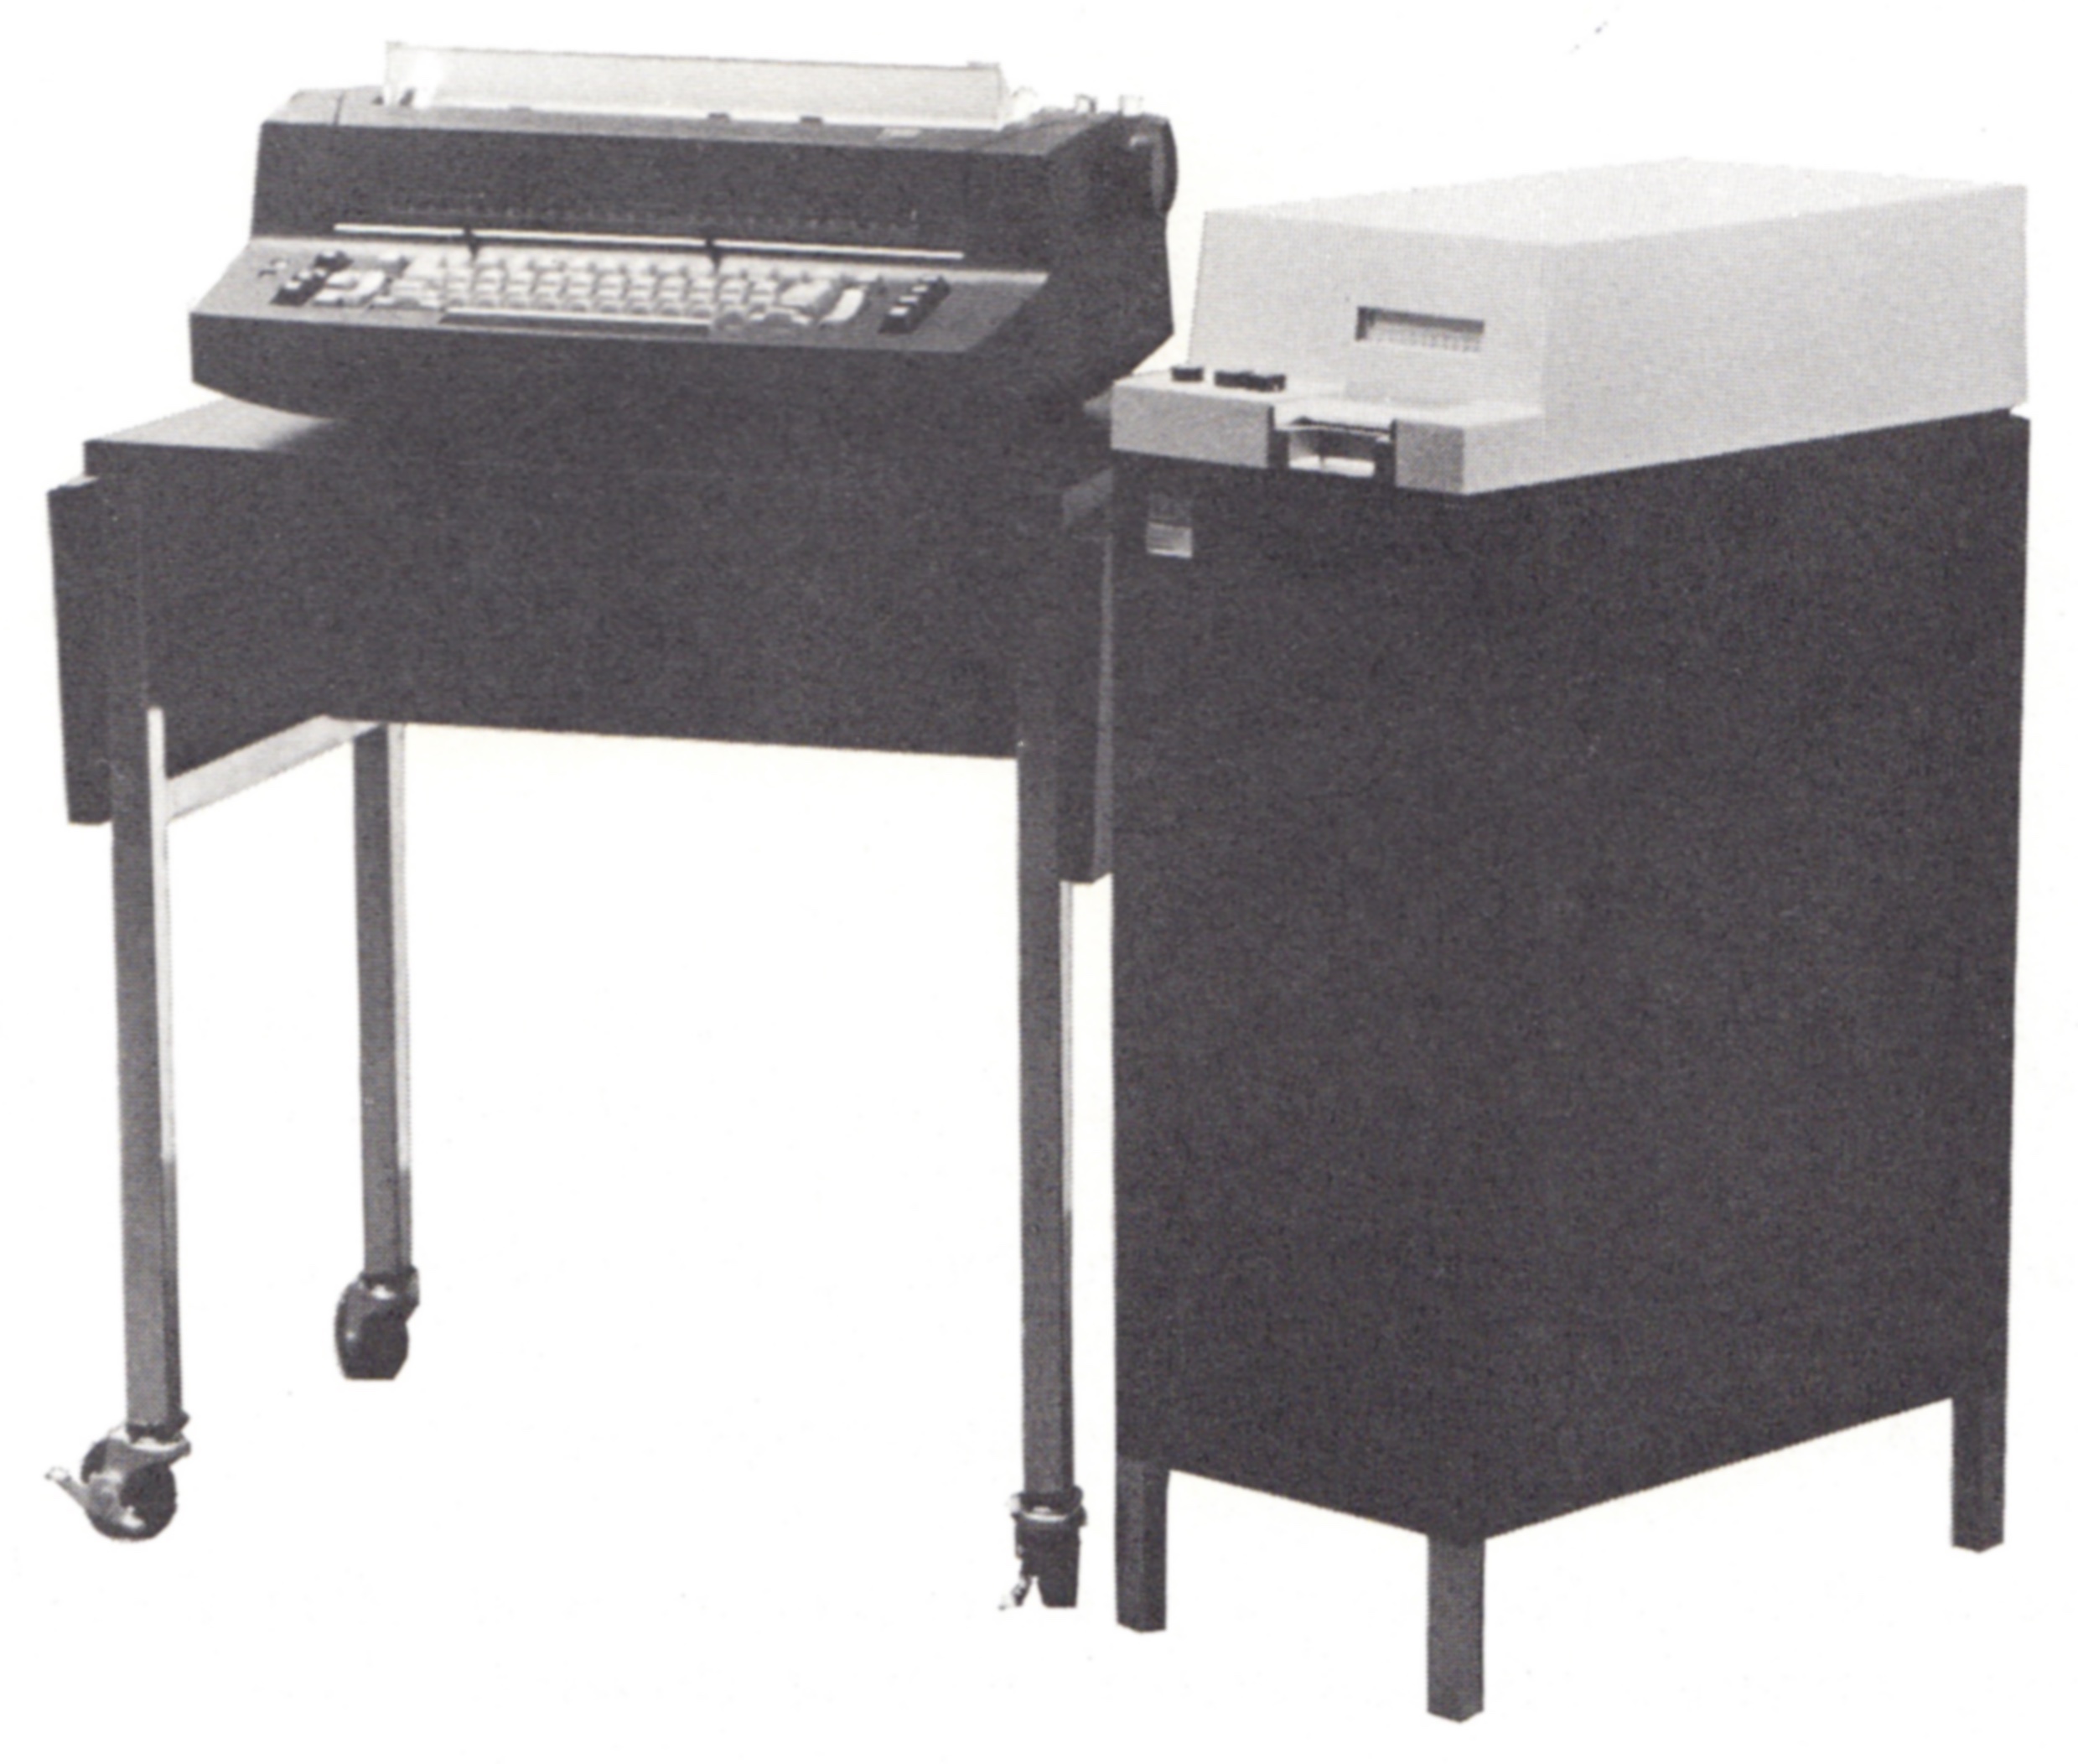 IBM Mag Card/Selectric Typewriter